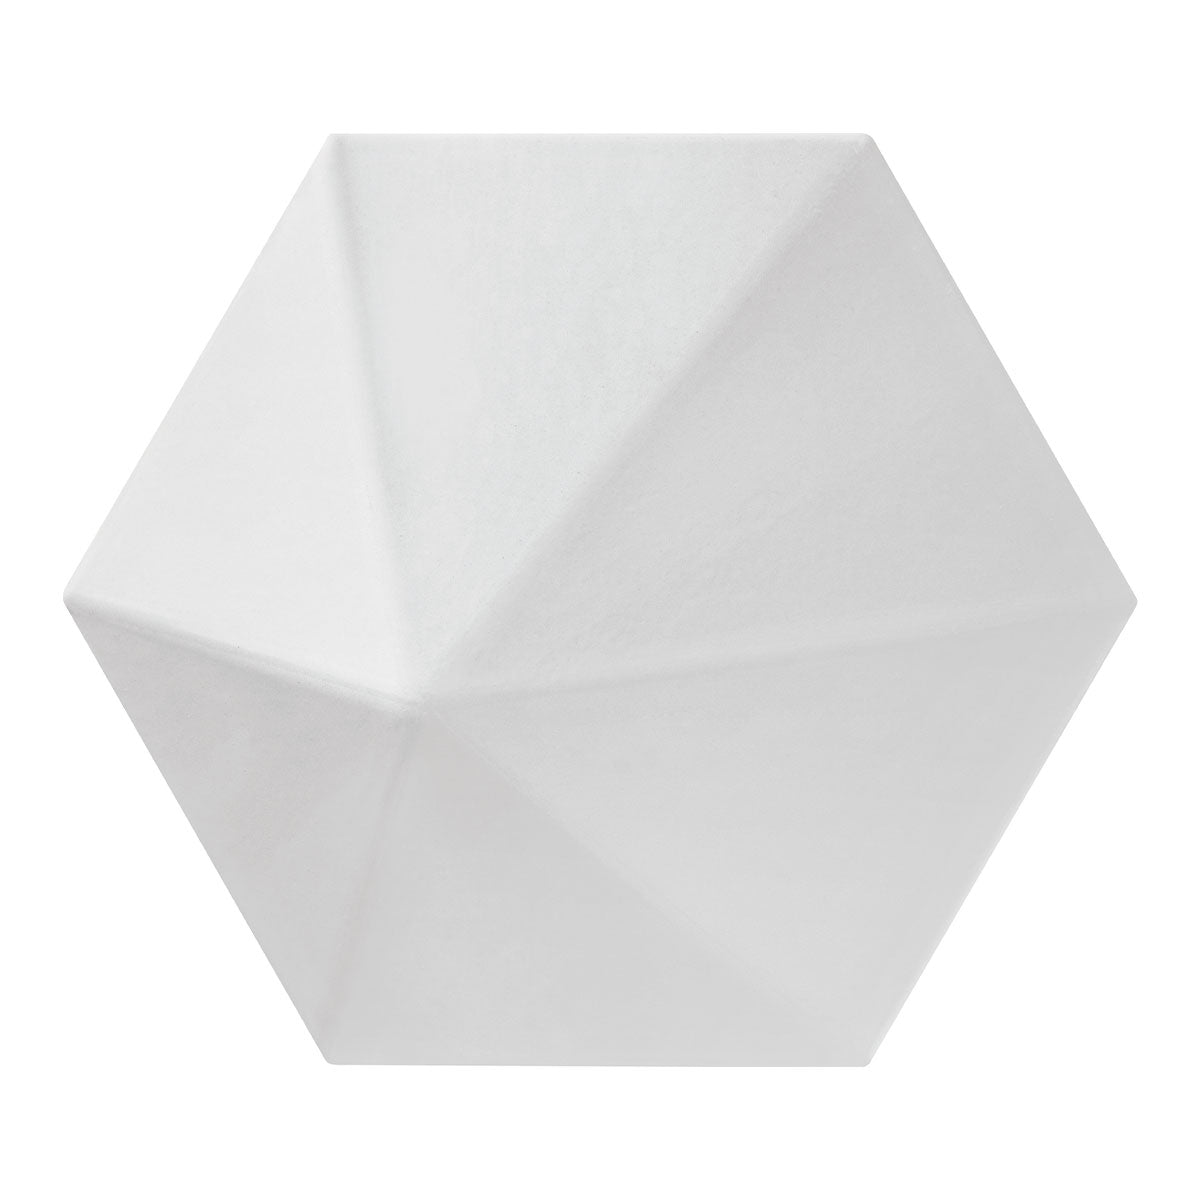 Grado - Quasar White Hexagon Ceramic SAMPLE